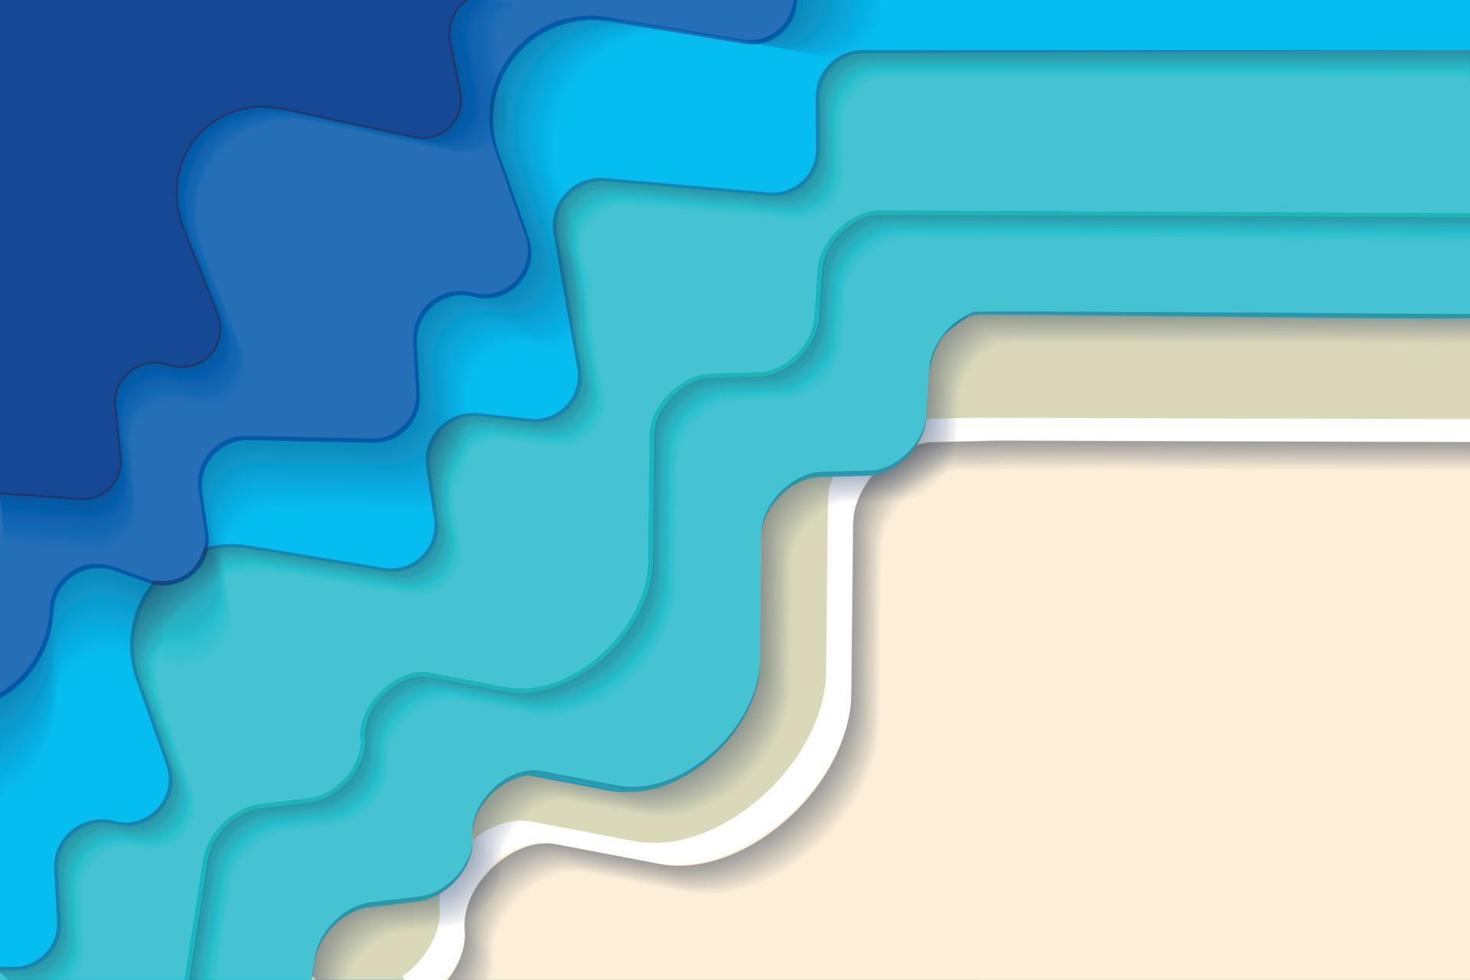 horizontal abstracto azul turquesa azul maldivo océano y playa fondo de verano con ondas de papel y costa de arena. ola de papel degradado de mar tropical y orilla arenosa. ilustración vectorial vector